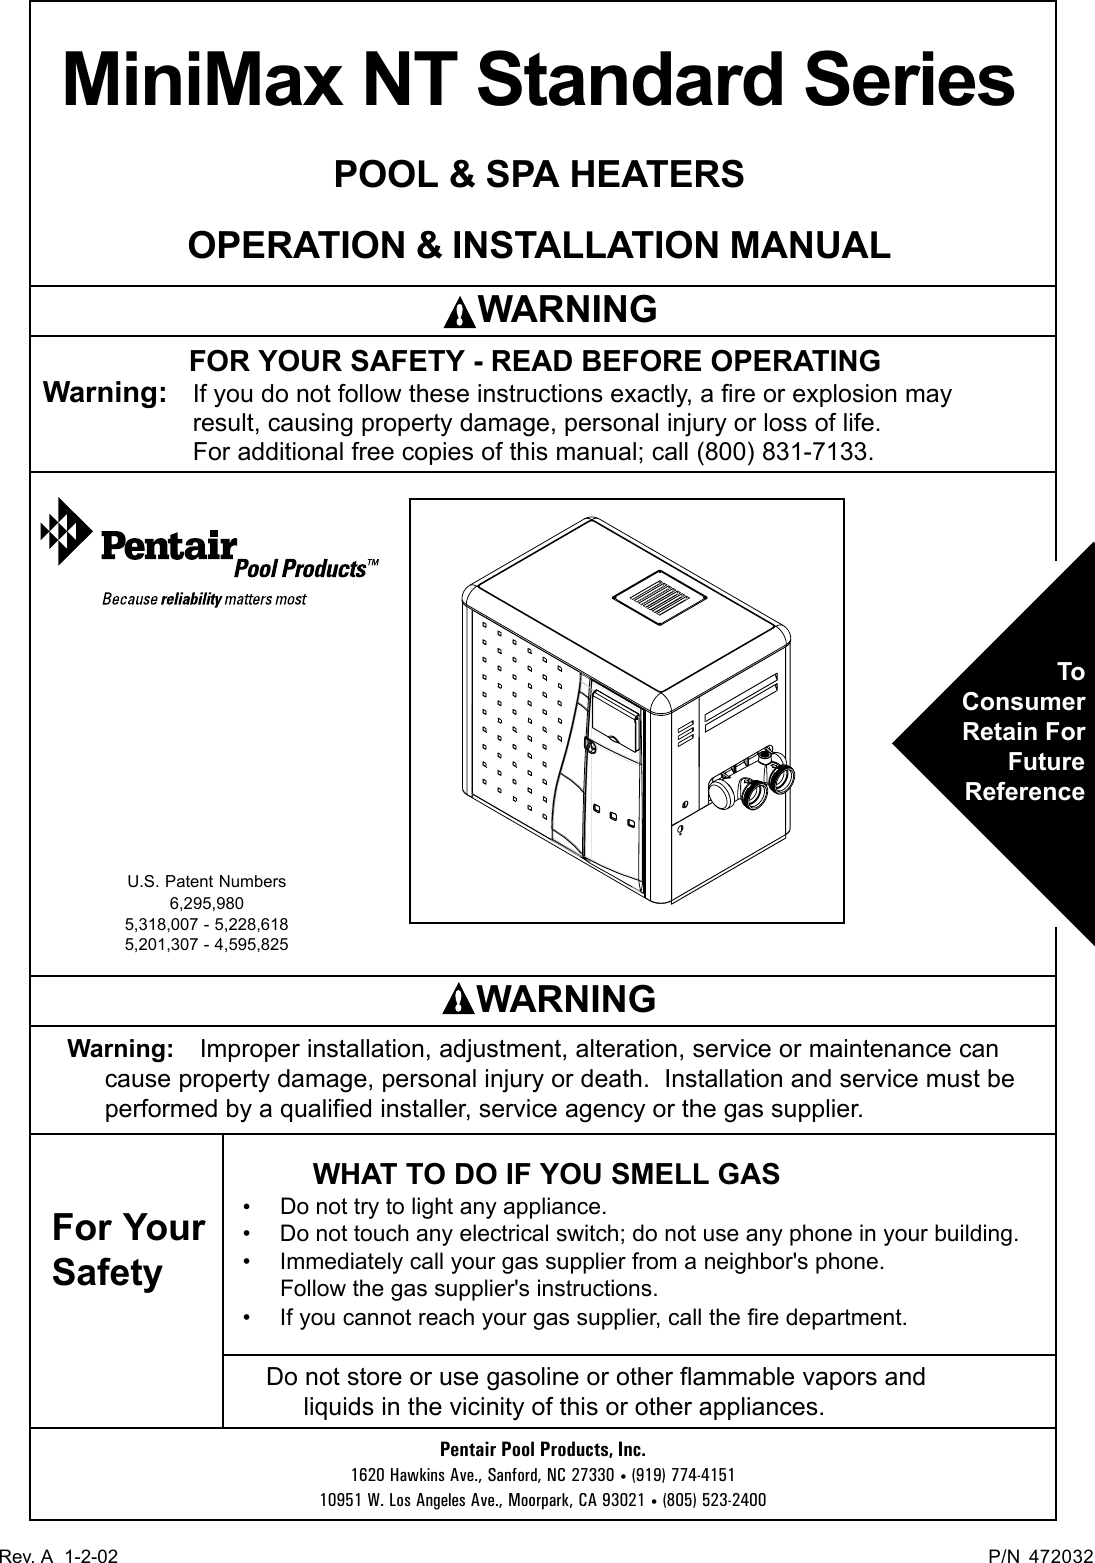 Pentair Minimax Nt Standard Series Users Manual 472032_revA.p65